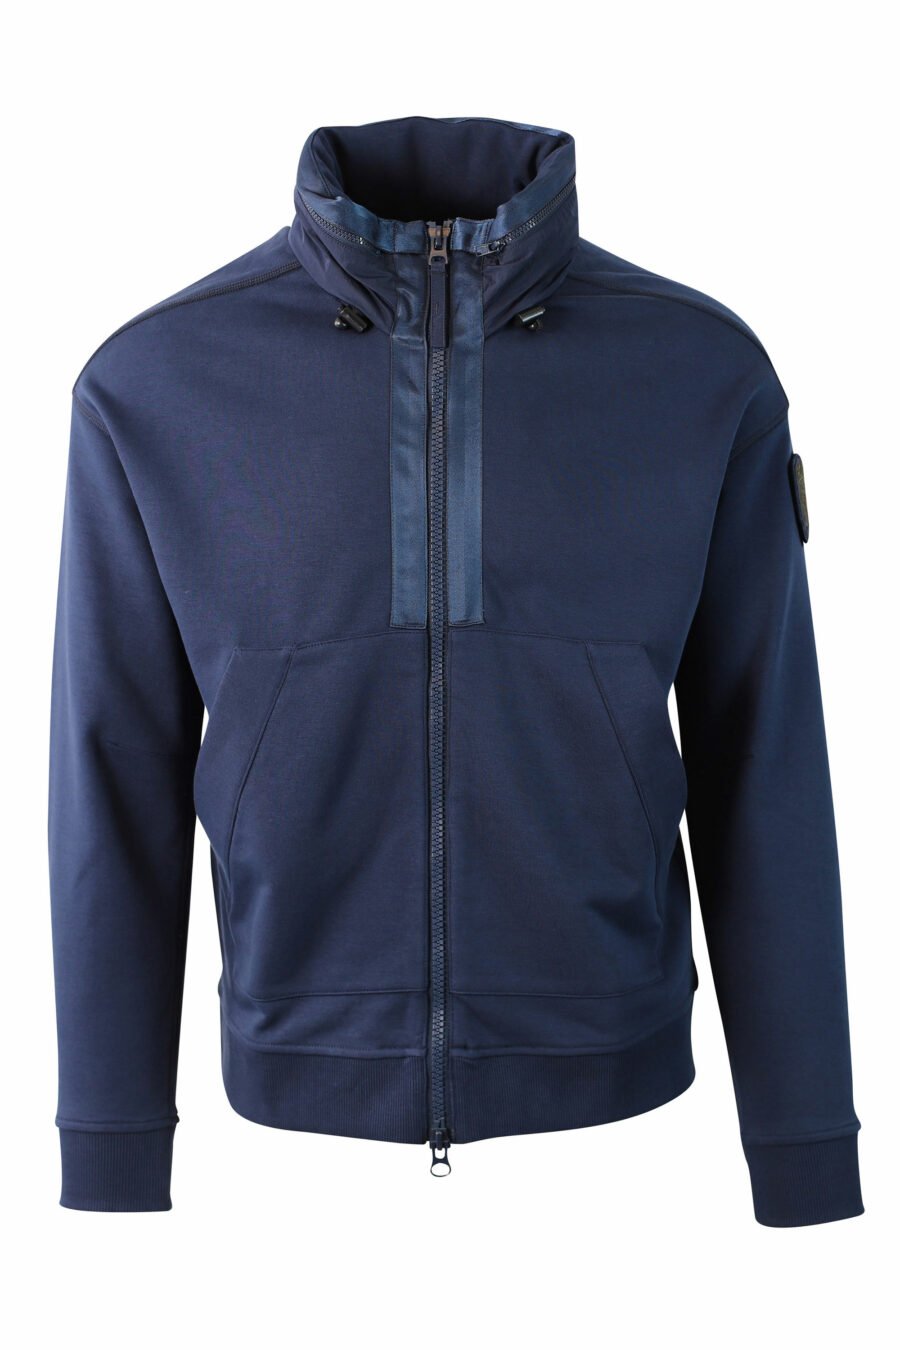 Blaues Fleece-Sweatshirt mit Reißverschluss und Aufnäher - IMG 0028 1